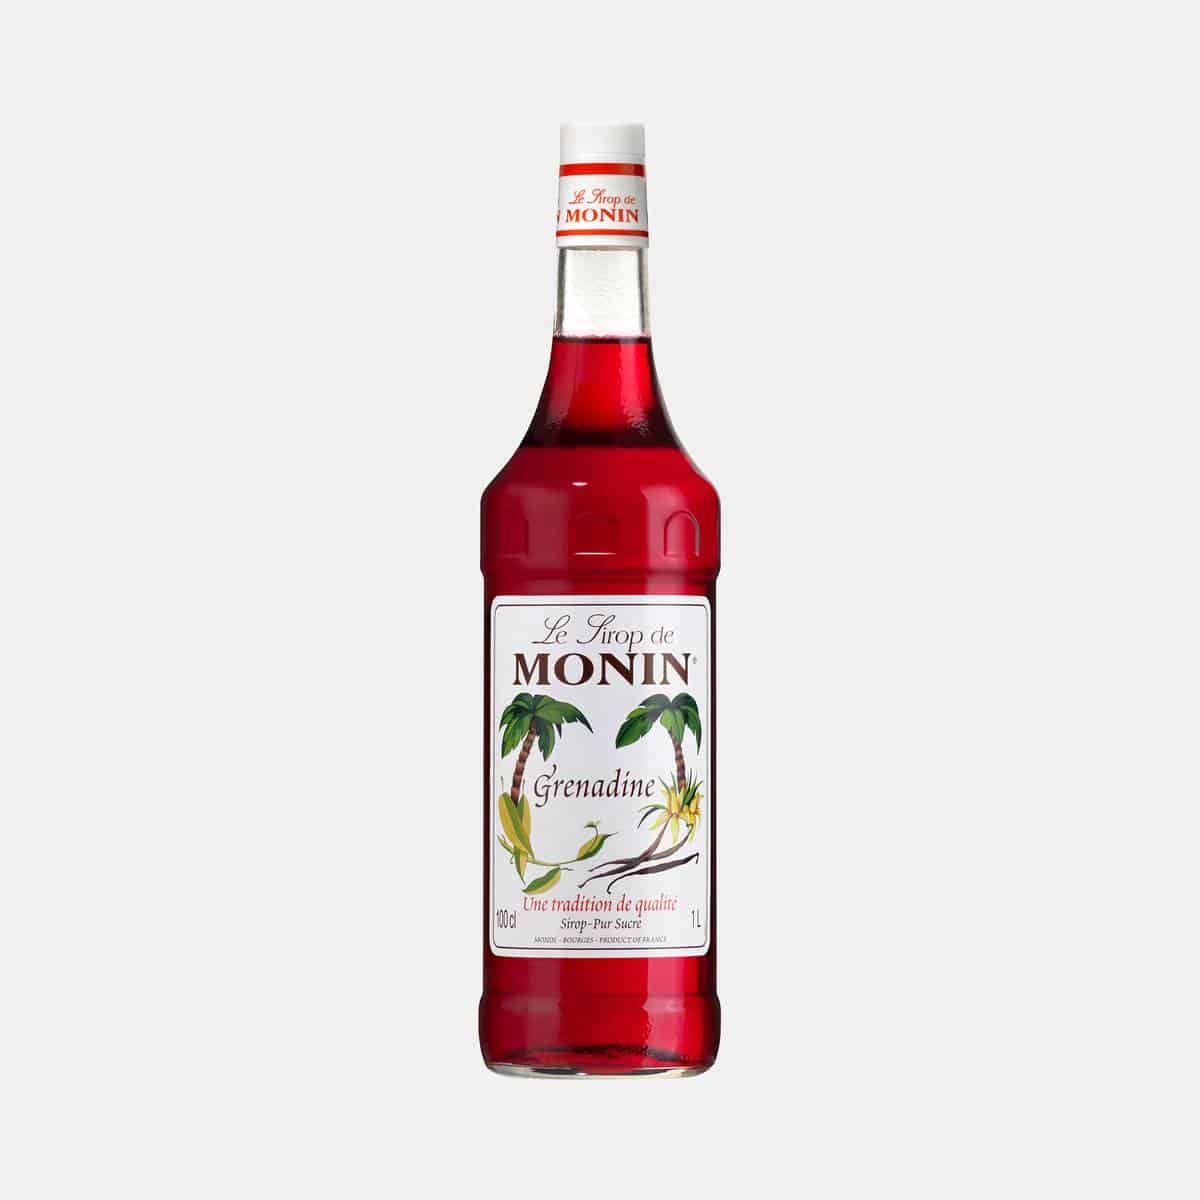 Monin Grenadine Syrup 1 Liter Glass Bottle